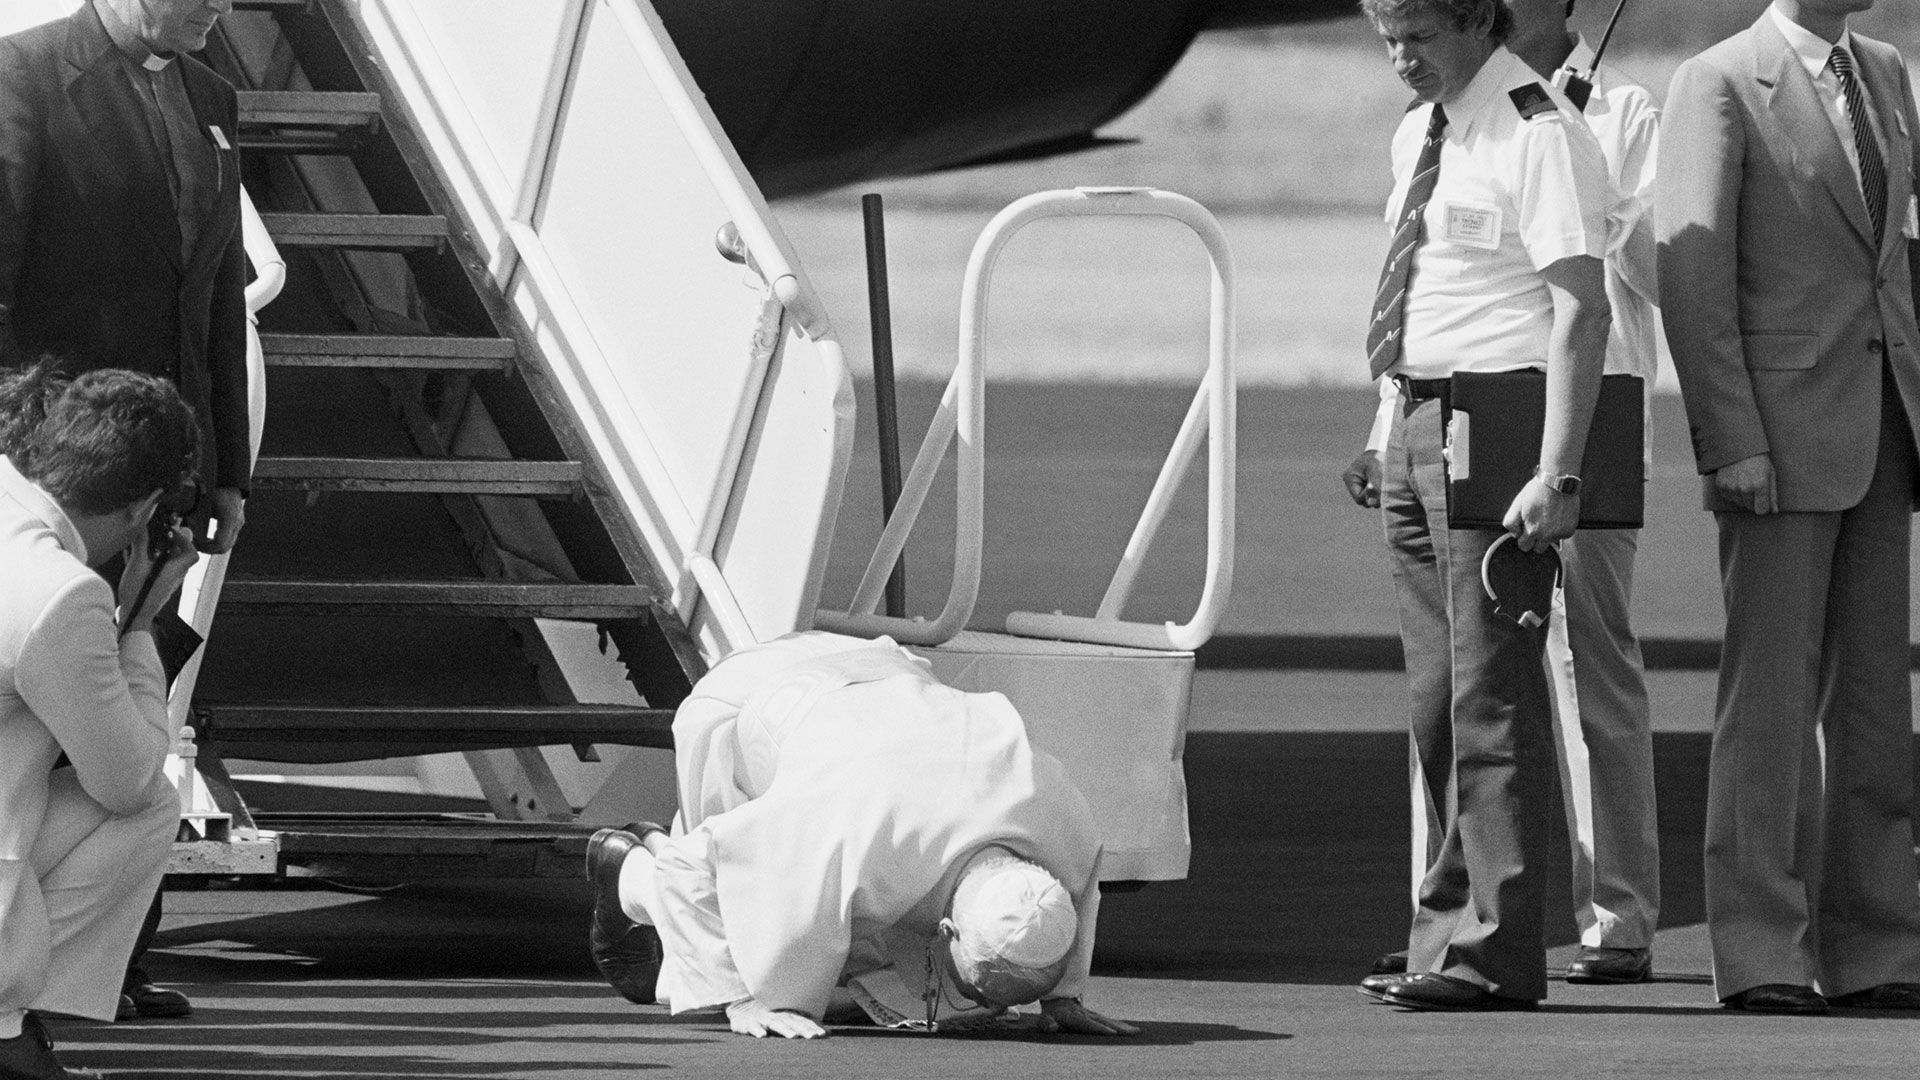 El Papa Juan Pablo II besa el suelo junto a la escalerilla del avión tras llegar a Managua, Nicaragua (Bettmann Archive)